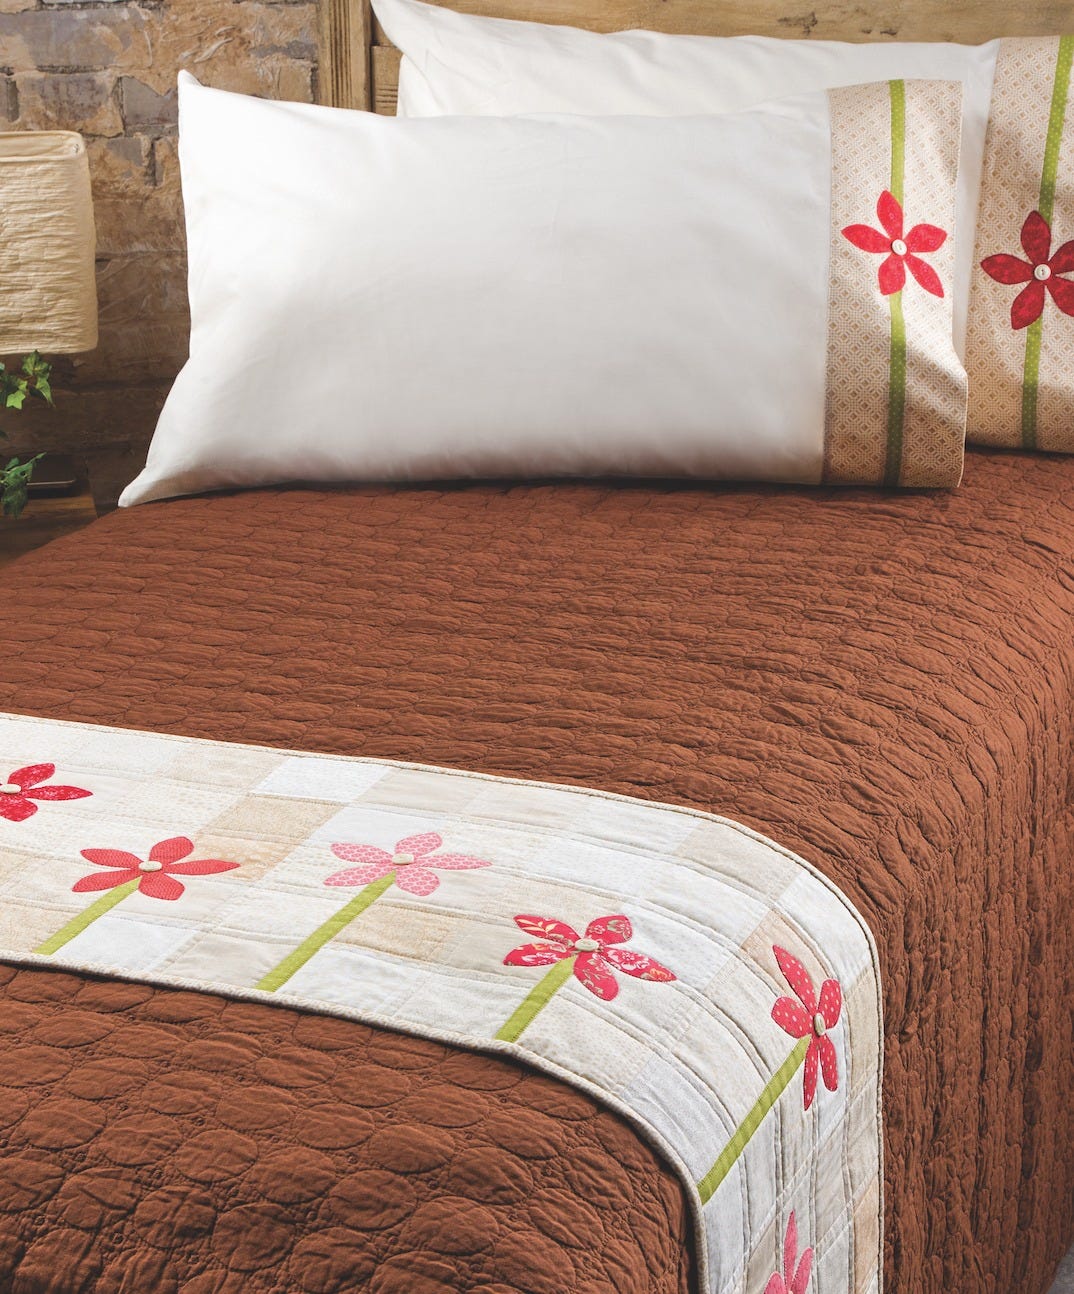 growing flower quilt bed runner pillowcase